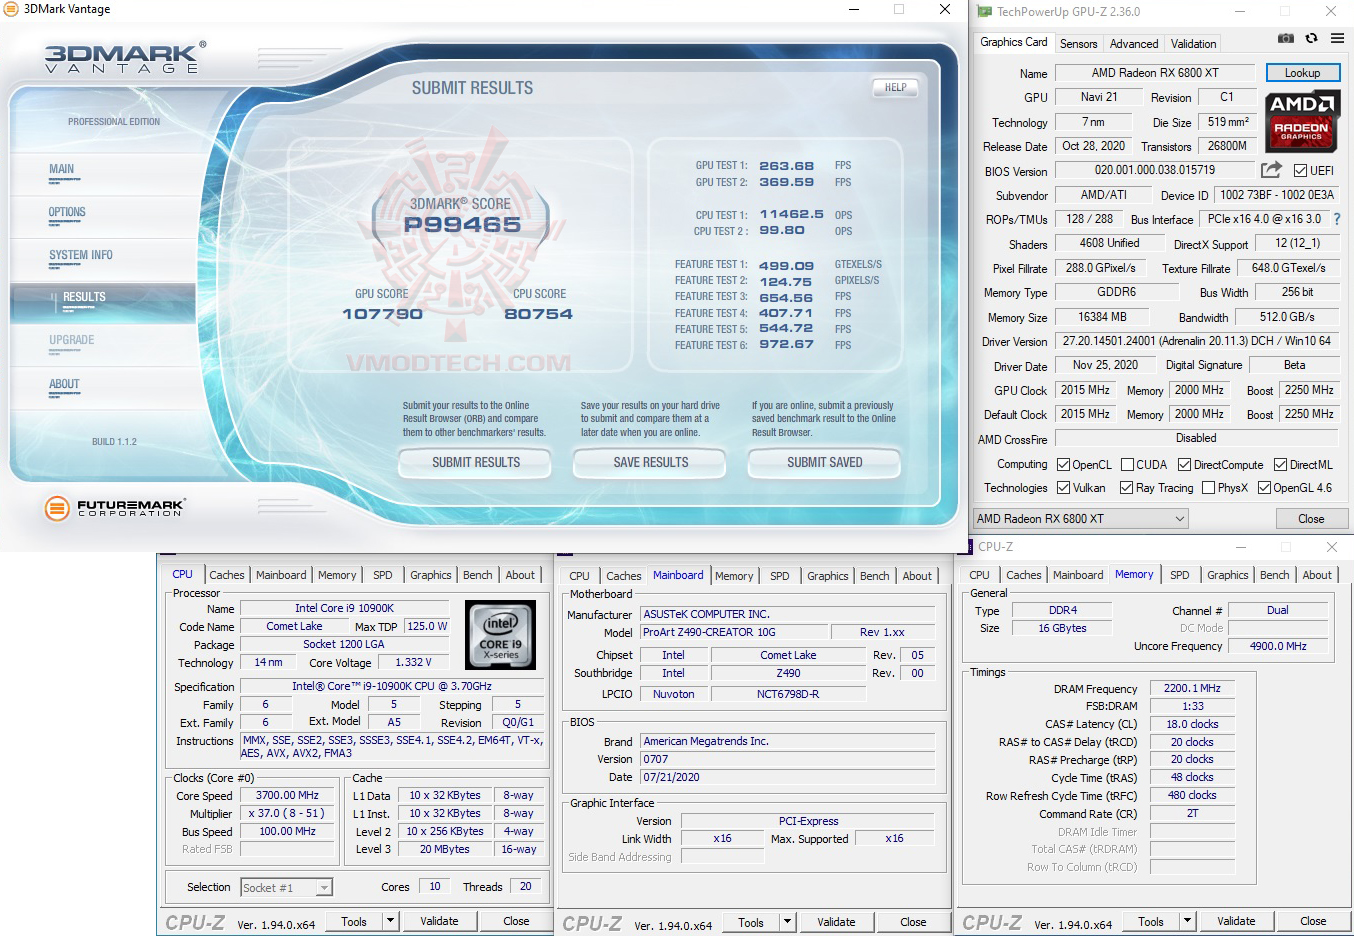 vt1 AMD RADEON RX 6800XT REVIEW